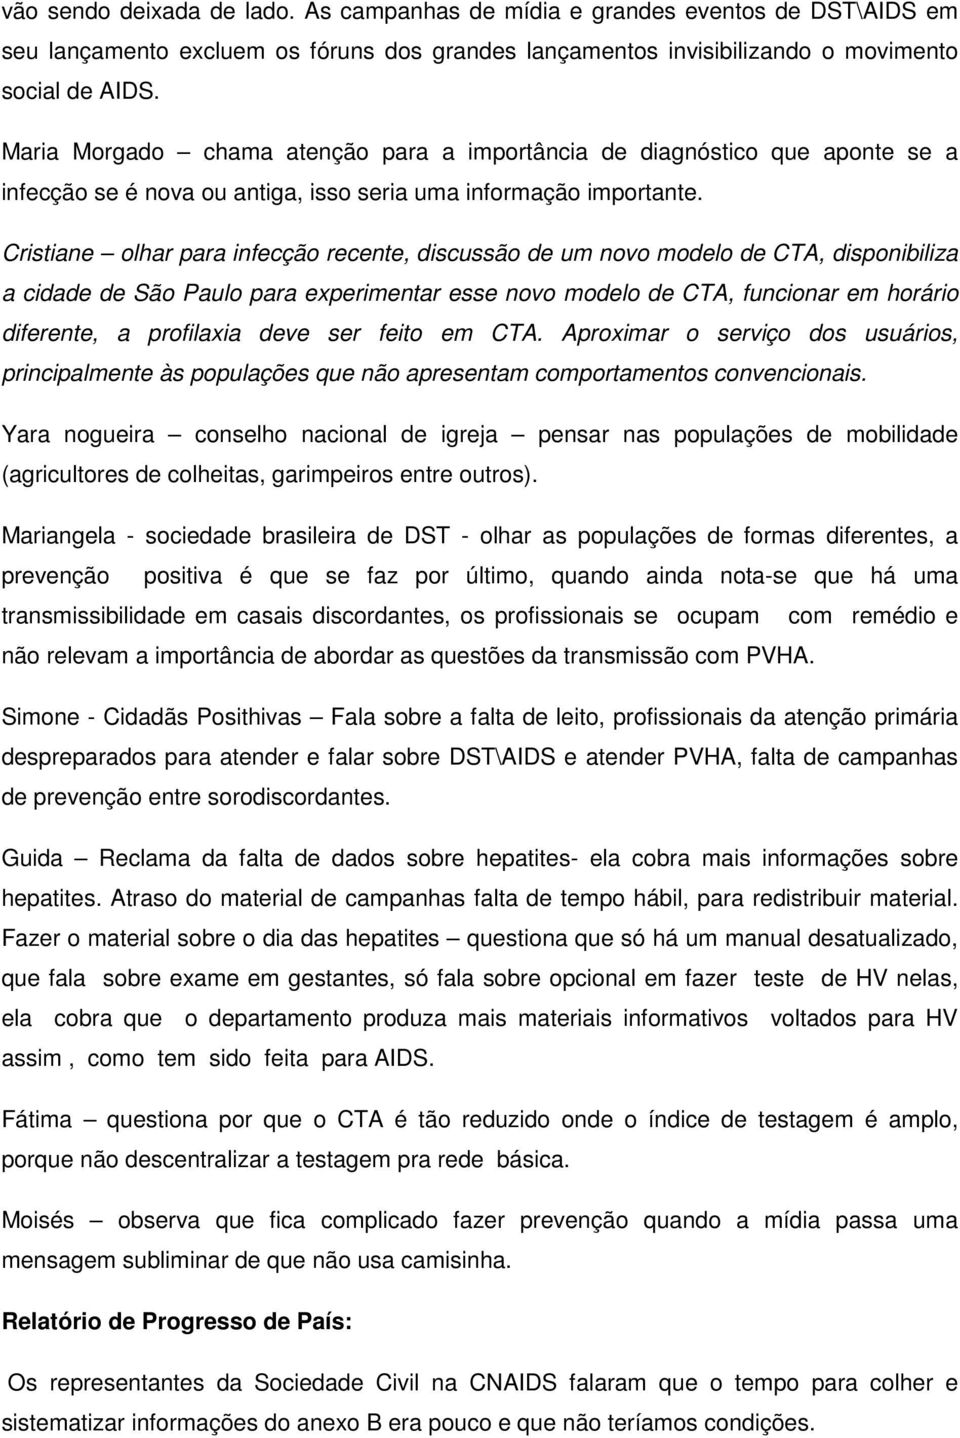 Cristiane olhar para infecção recente, discussão de um novo modelo de CTA, disponibiliza a cidade de São Paulo para experimentar esse novo modelo de CTA, funcionar em horário diferente, a profilaxia